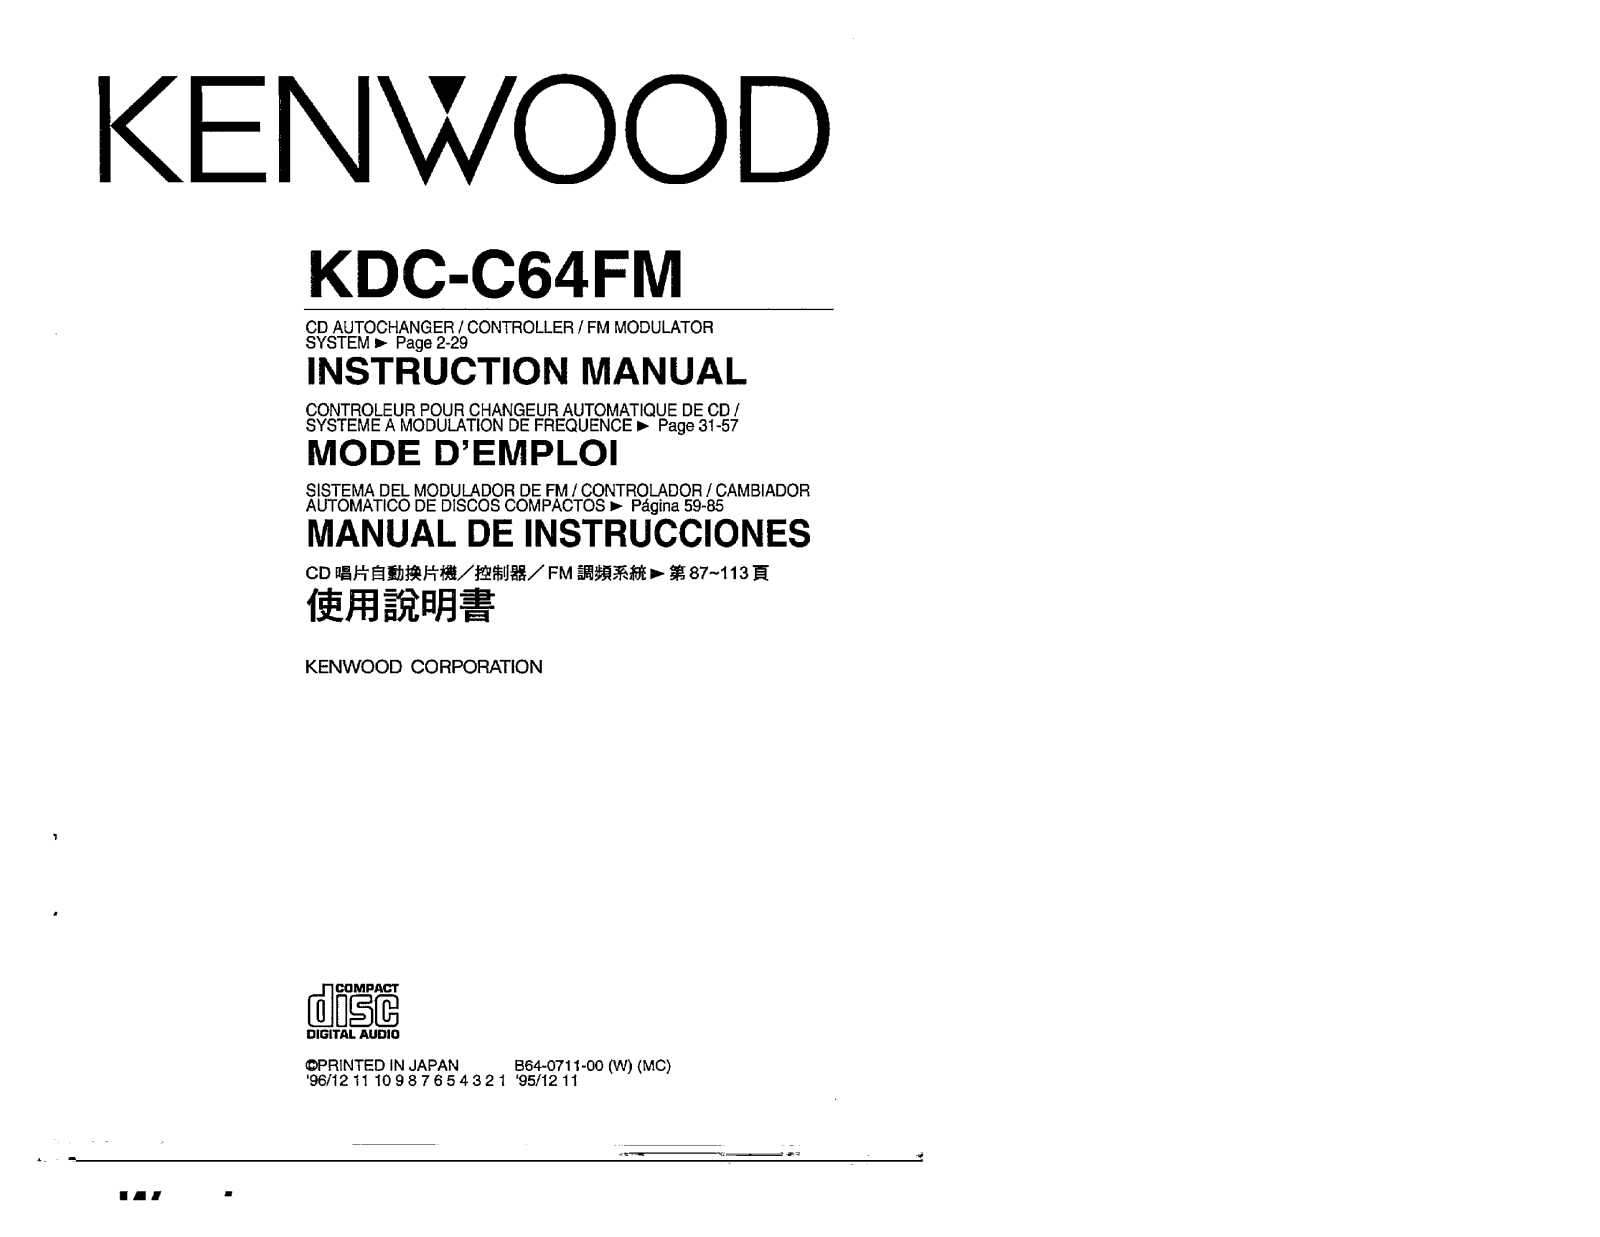 Kenwood KDC-C64FM Owner's Manual